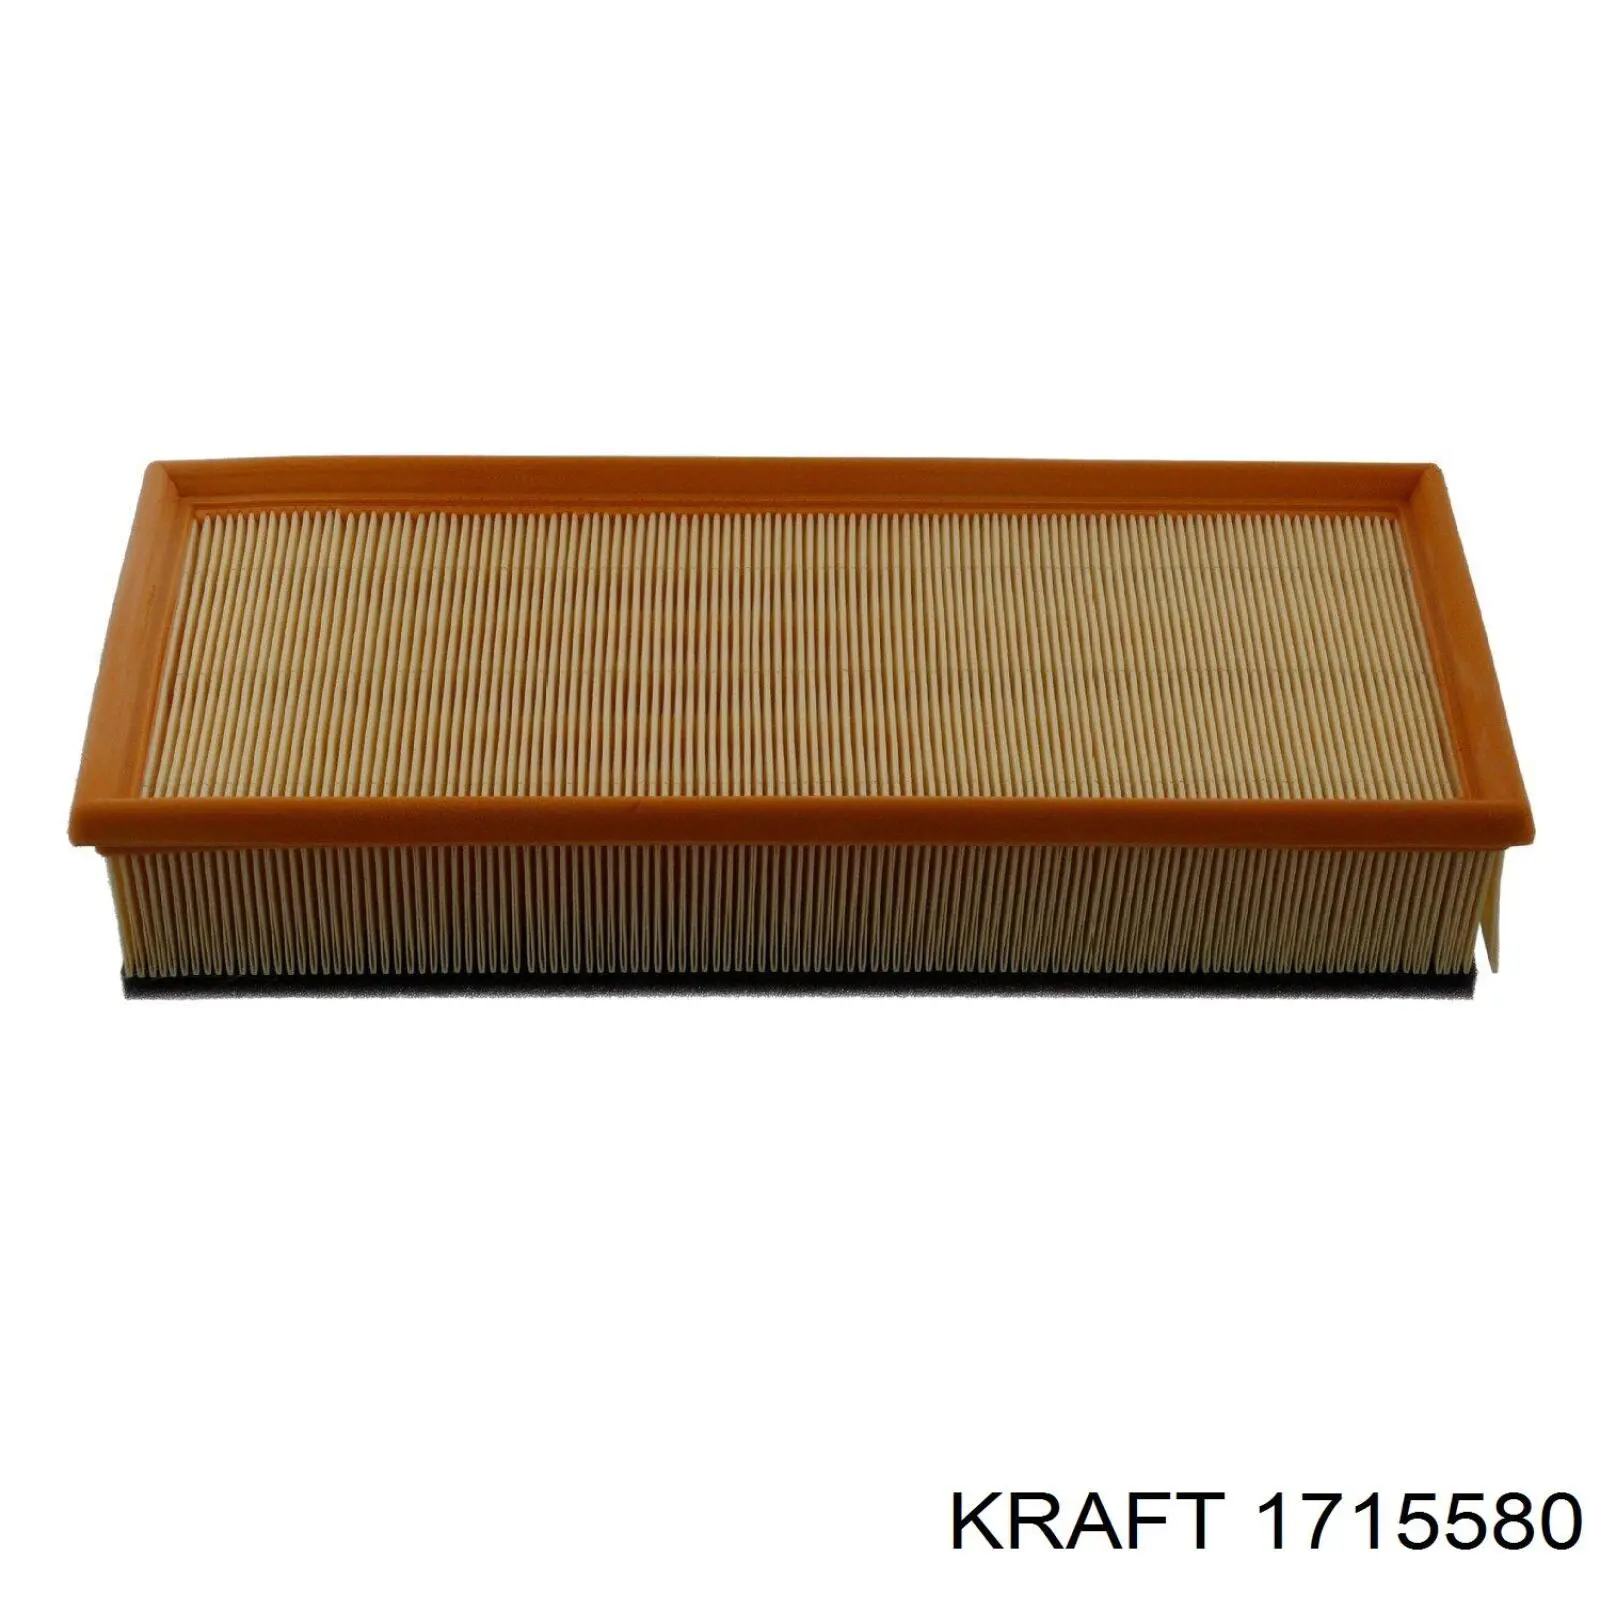 1715580 Kraft filtro de aire